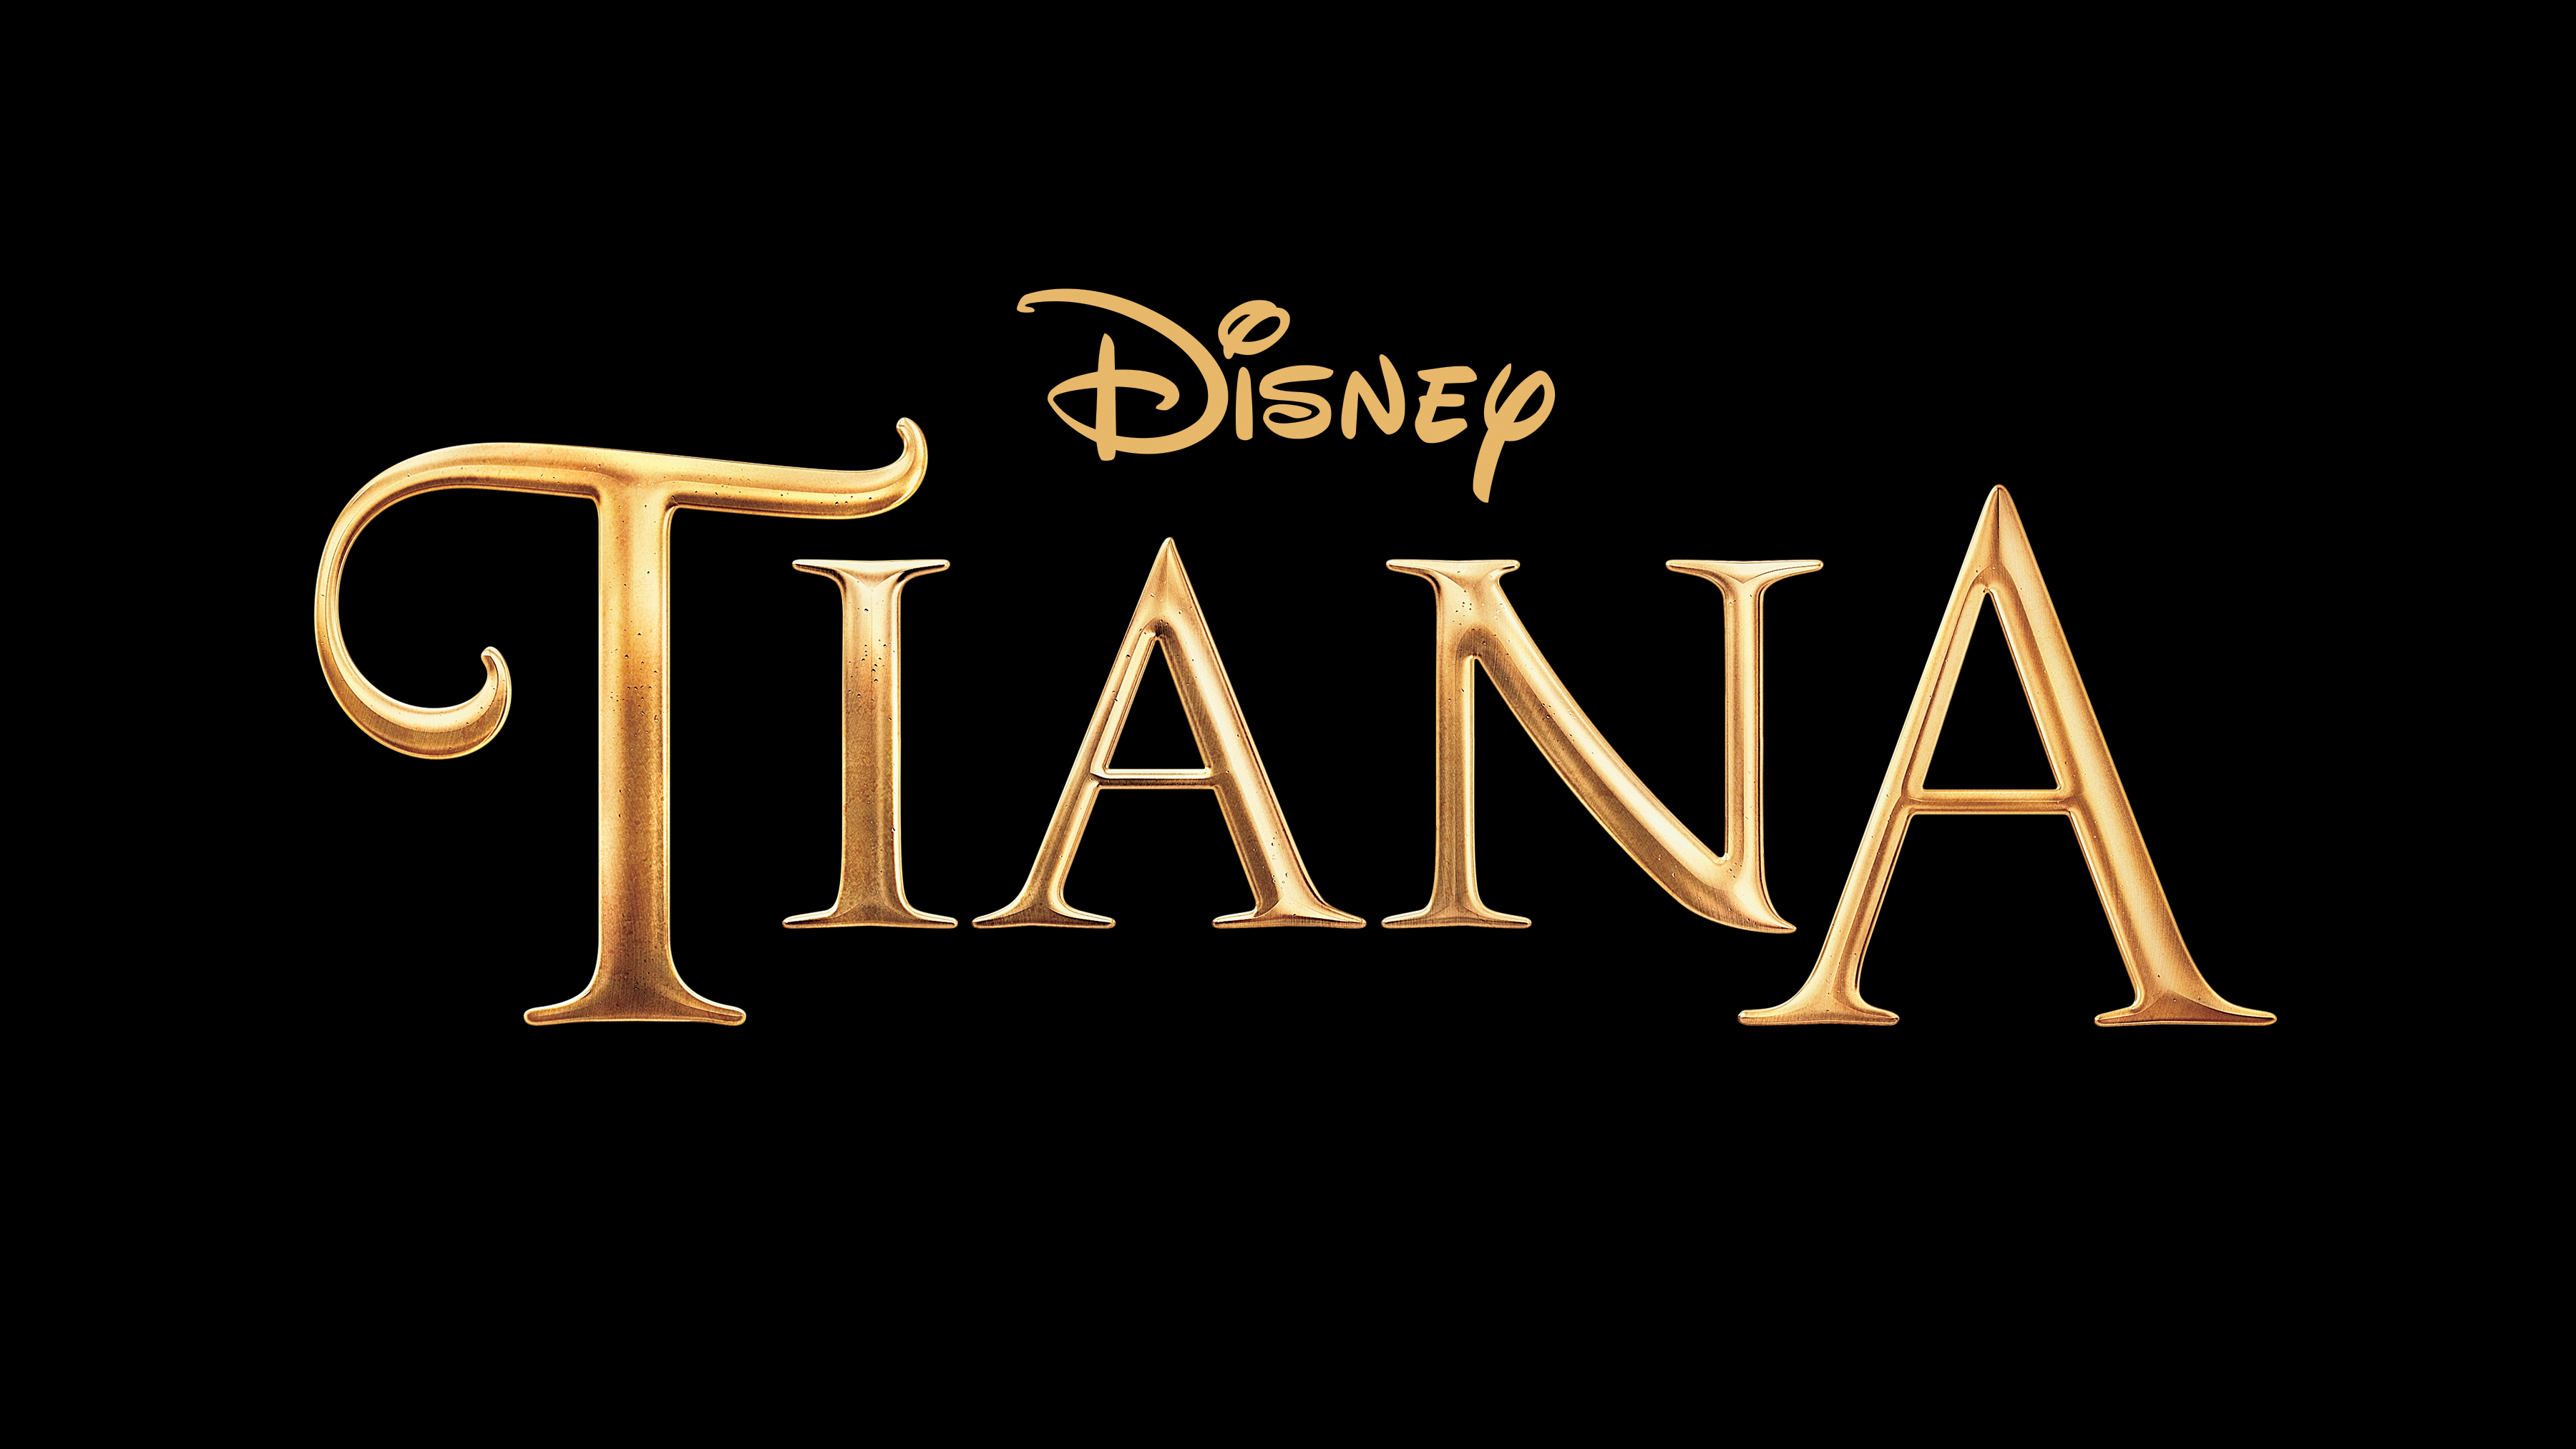 ディズニープラス公式 さらに ディズニープリンセスの新たな物語がミュージカル シリーズとなって ディズニープラス で23年配信開始 プリンセスと魔法のキス のティアナの物語 ティアナ 原題 モアナと伝説の海 から生まれた モアナ